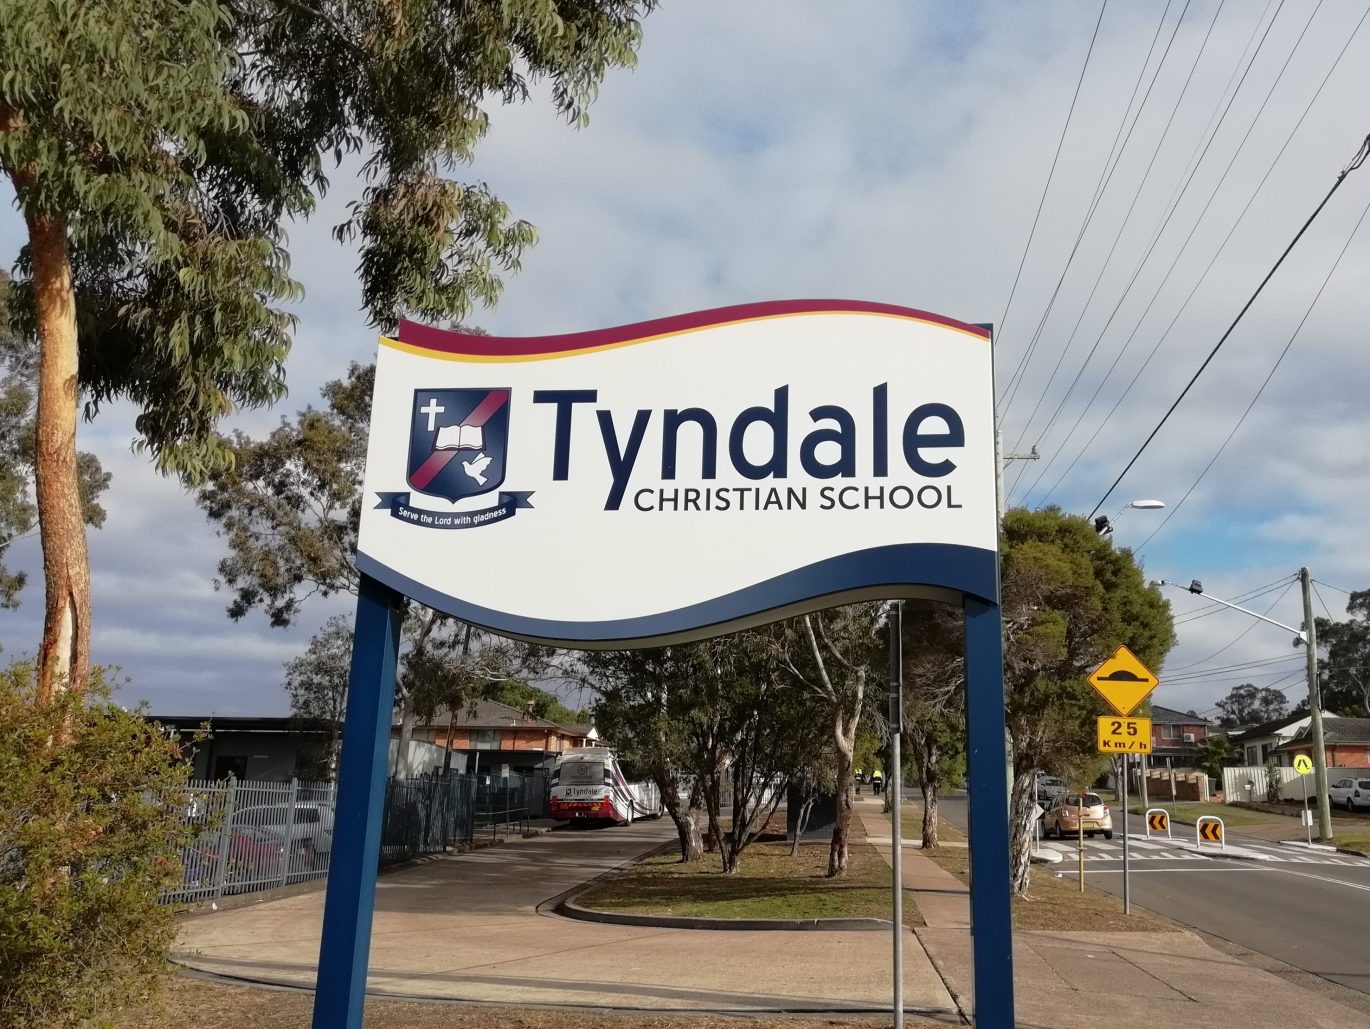 Membre d’équipe Bianca rend visite à la Tyndale Christian School en Australie